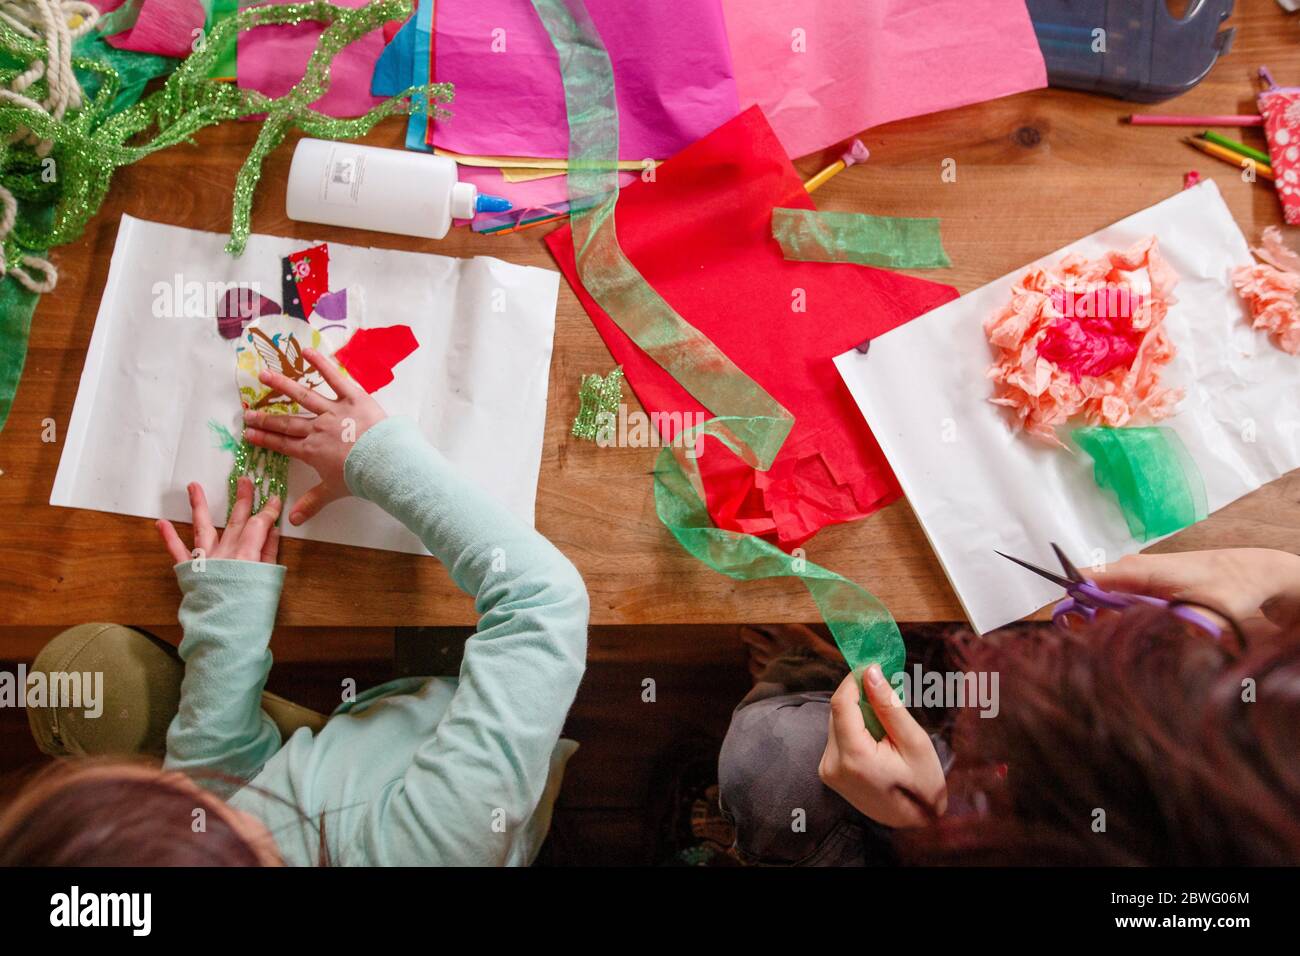 Vue de haut en bas de deux enfants faisant de l'art et de l'artisanat à une table en bois Banque D'Images